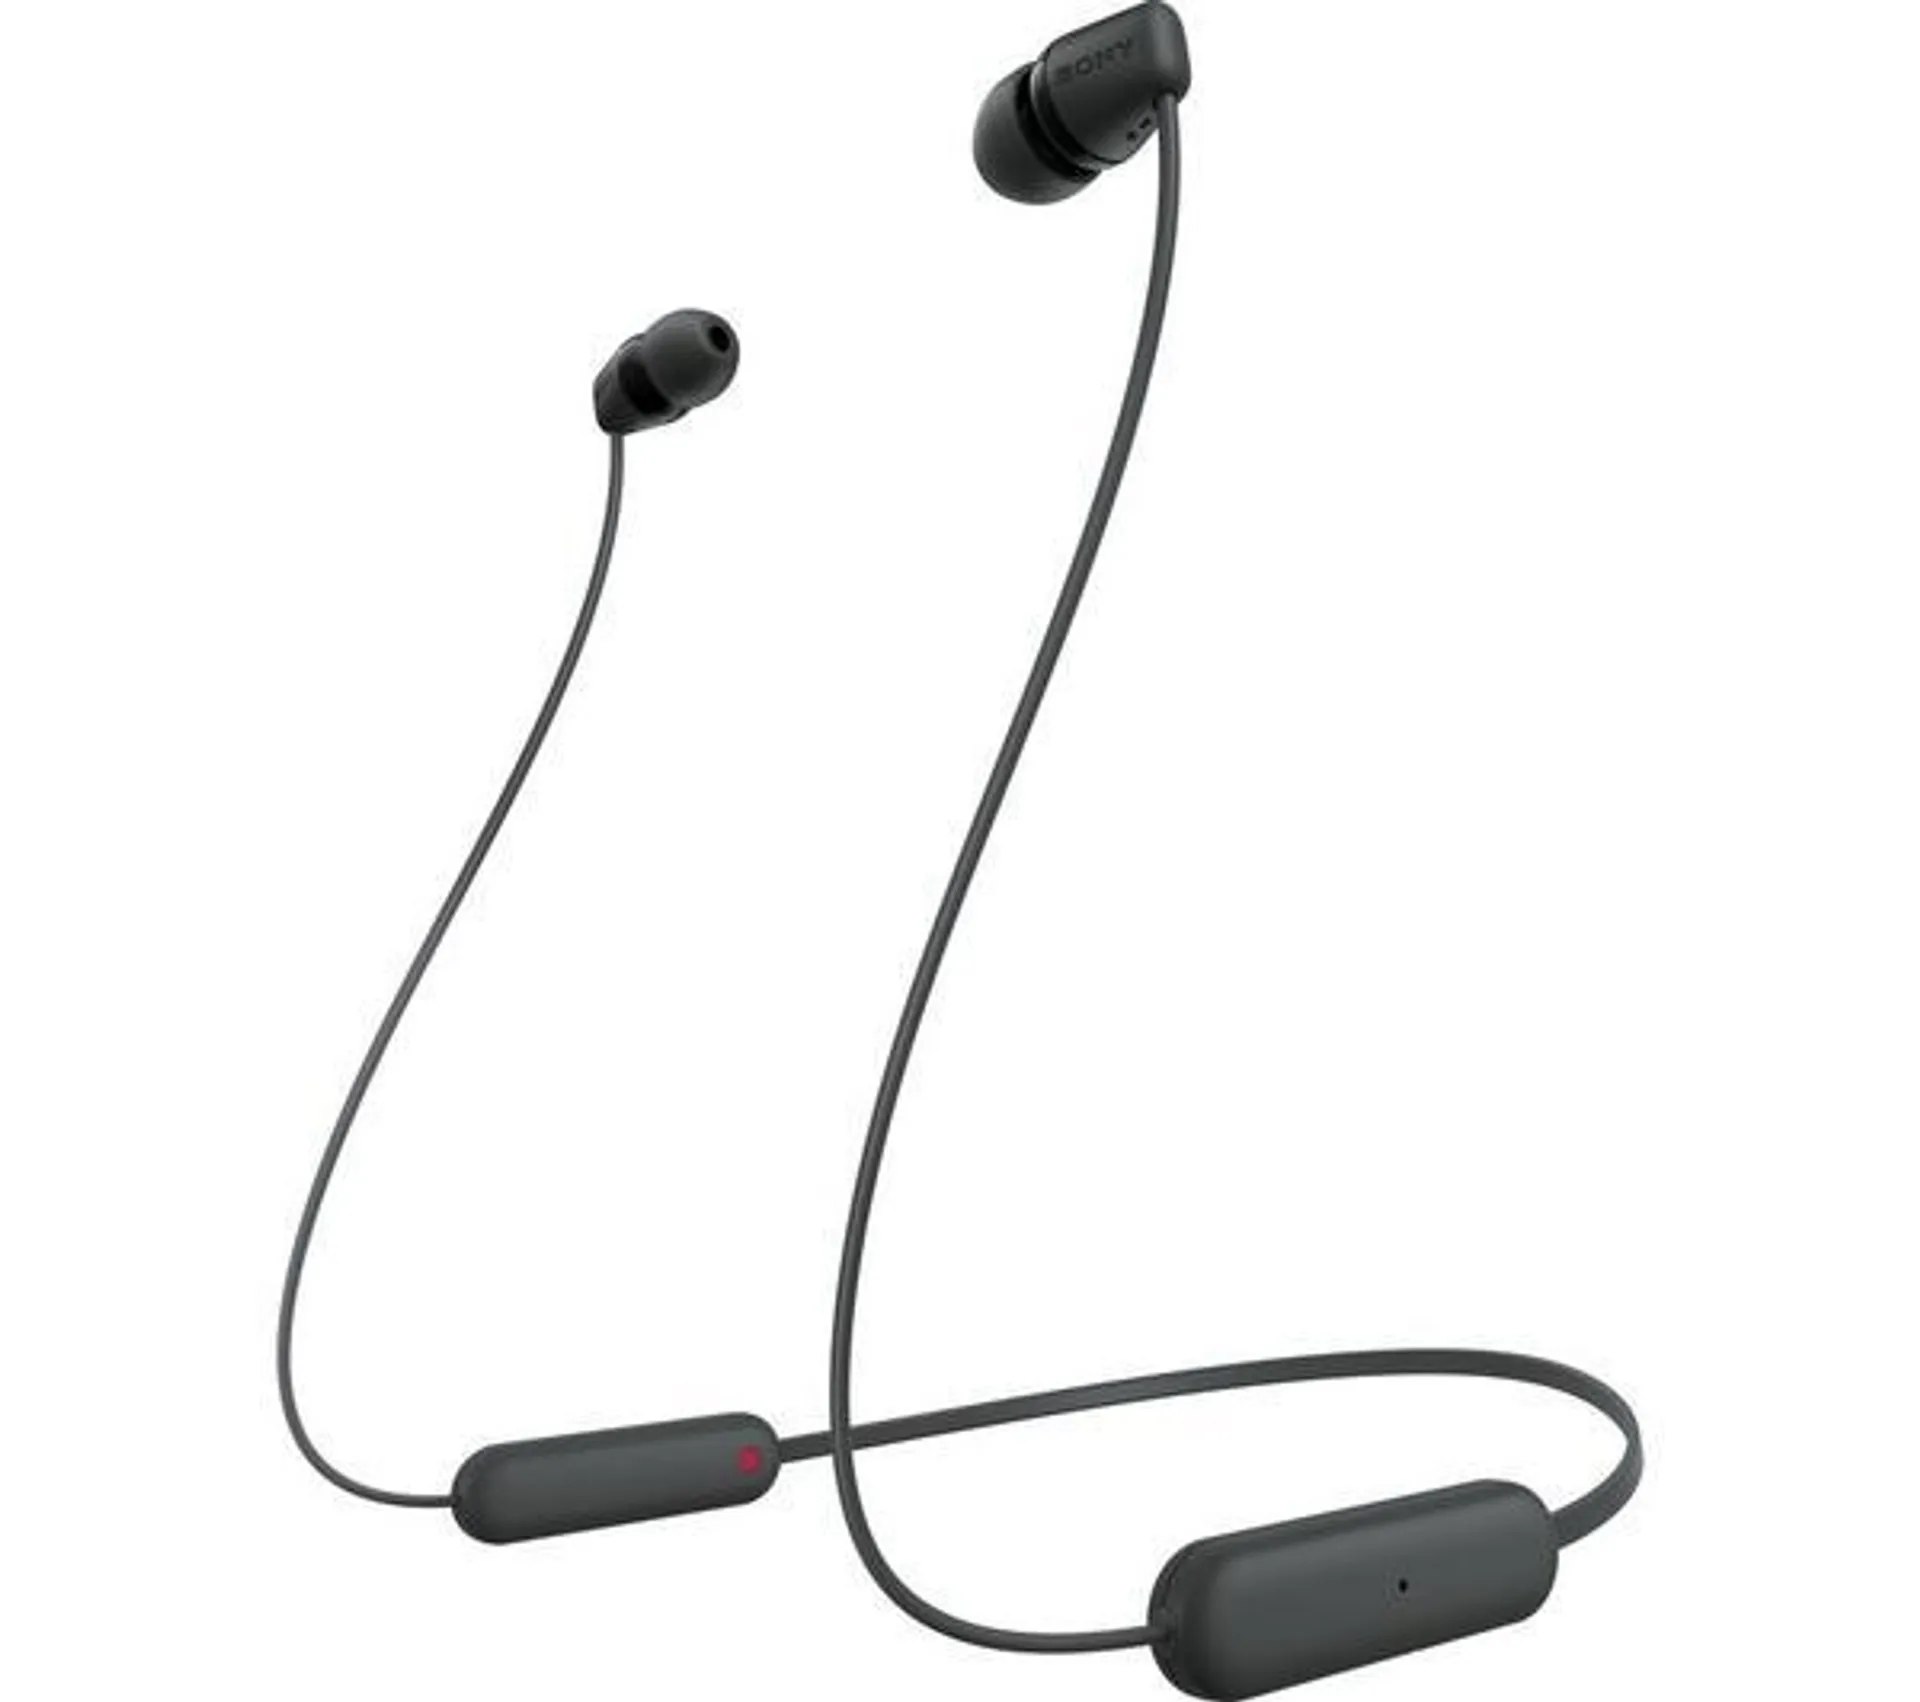 SONY WI-C100 Wireless Bluetooth Earphones - Black